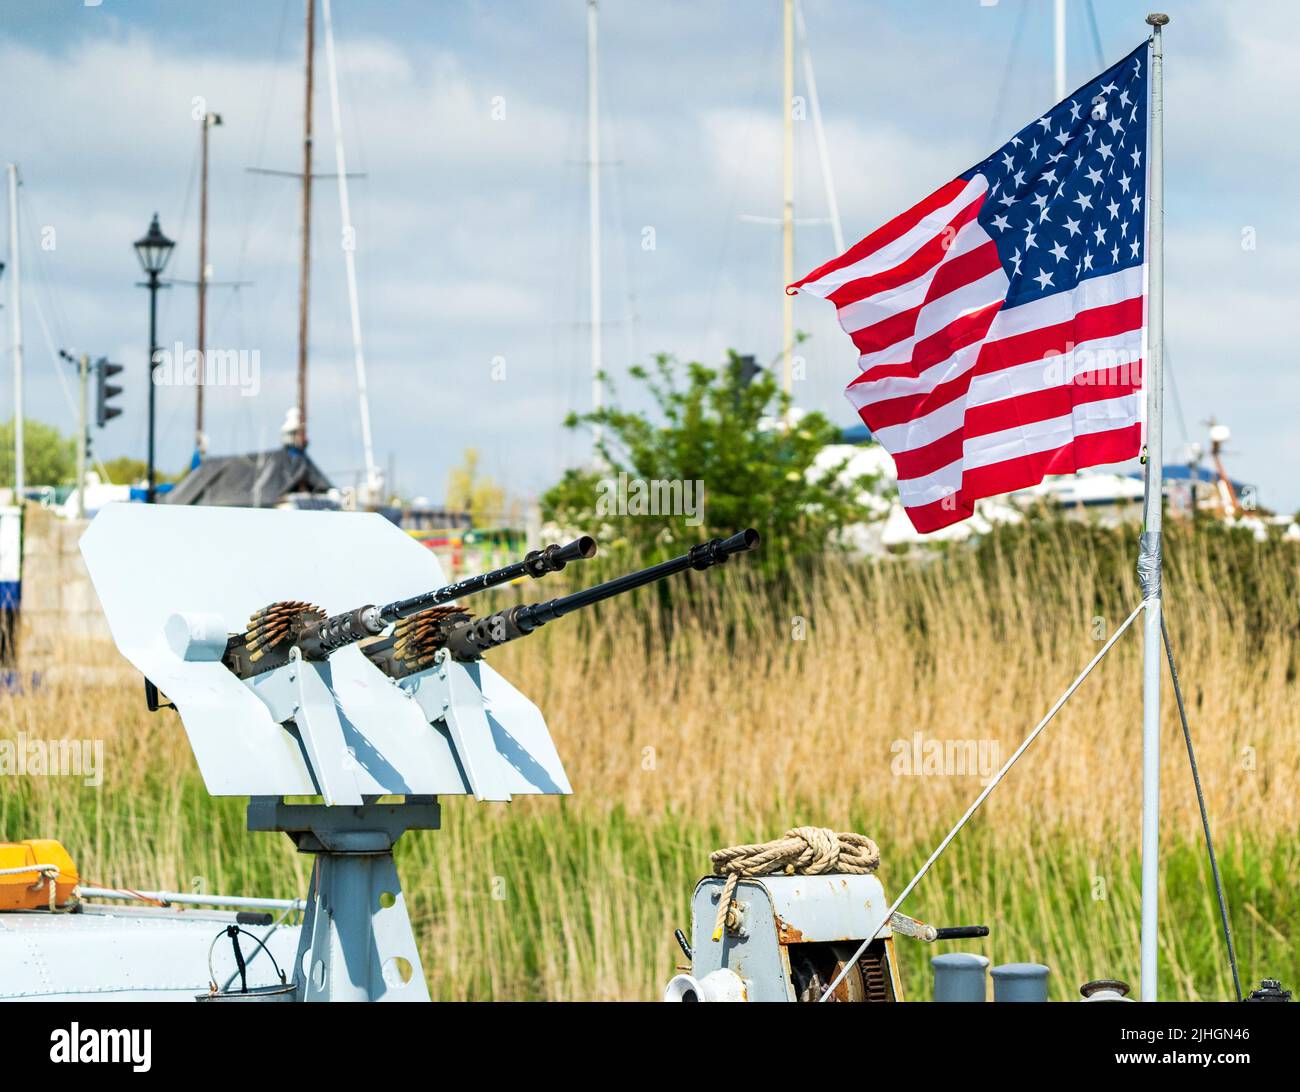 Amerikanische Flagge flattert im Wind neben einem Zwillings-Revolver mit M1919 Browning-Maschinengewehr auf dem Bogendeck des US-Marine-Patrouillenbootes, P22 in Sandwich, Ken Stockfoto